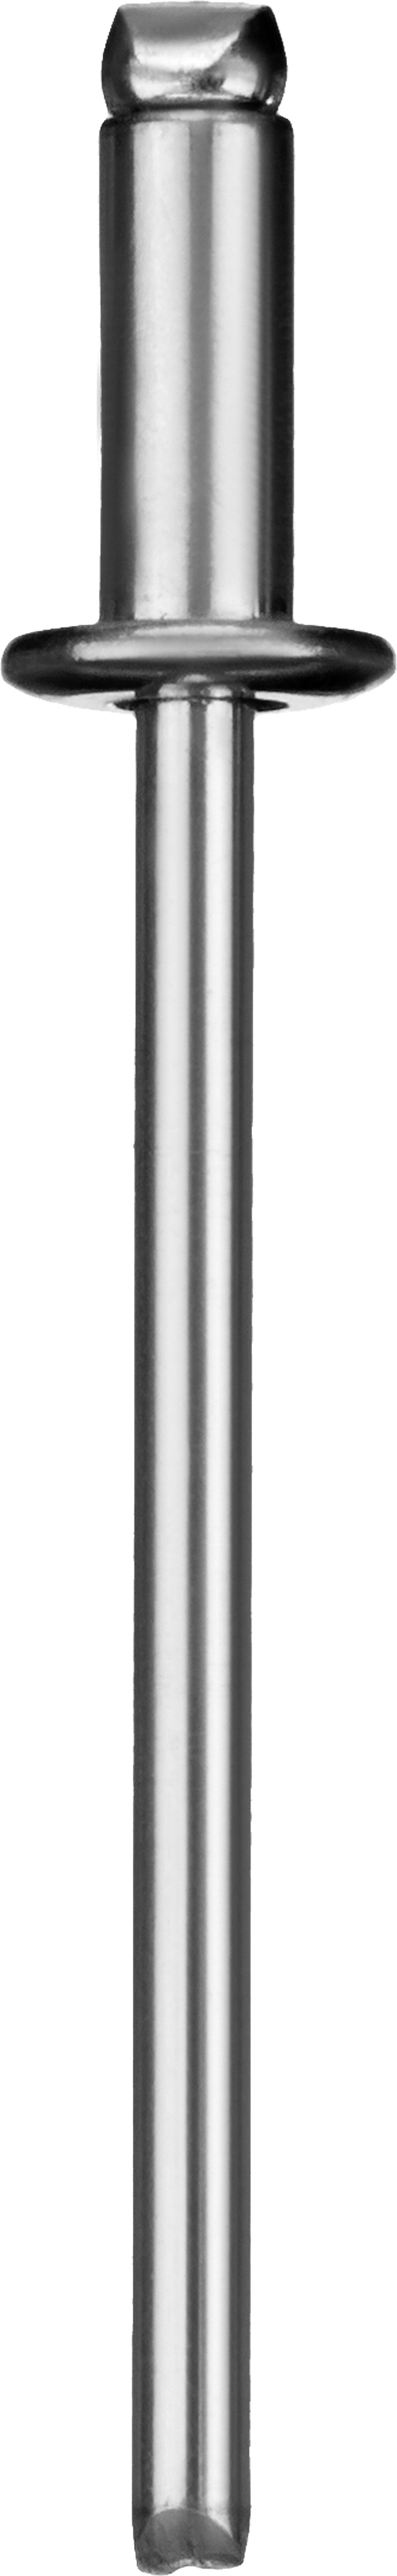 Заклепки вытяжные Зубр Профессионал, ⌀ 3.2 мм длина гильзы 12 мм, алюминий, 50 шт. (313106-32-12)